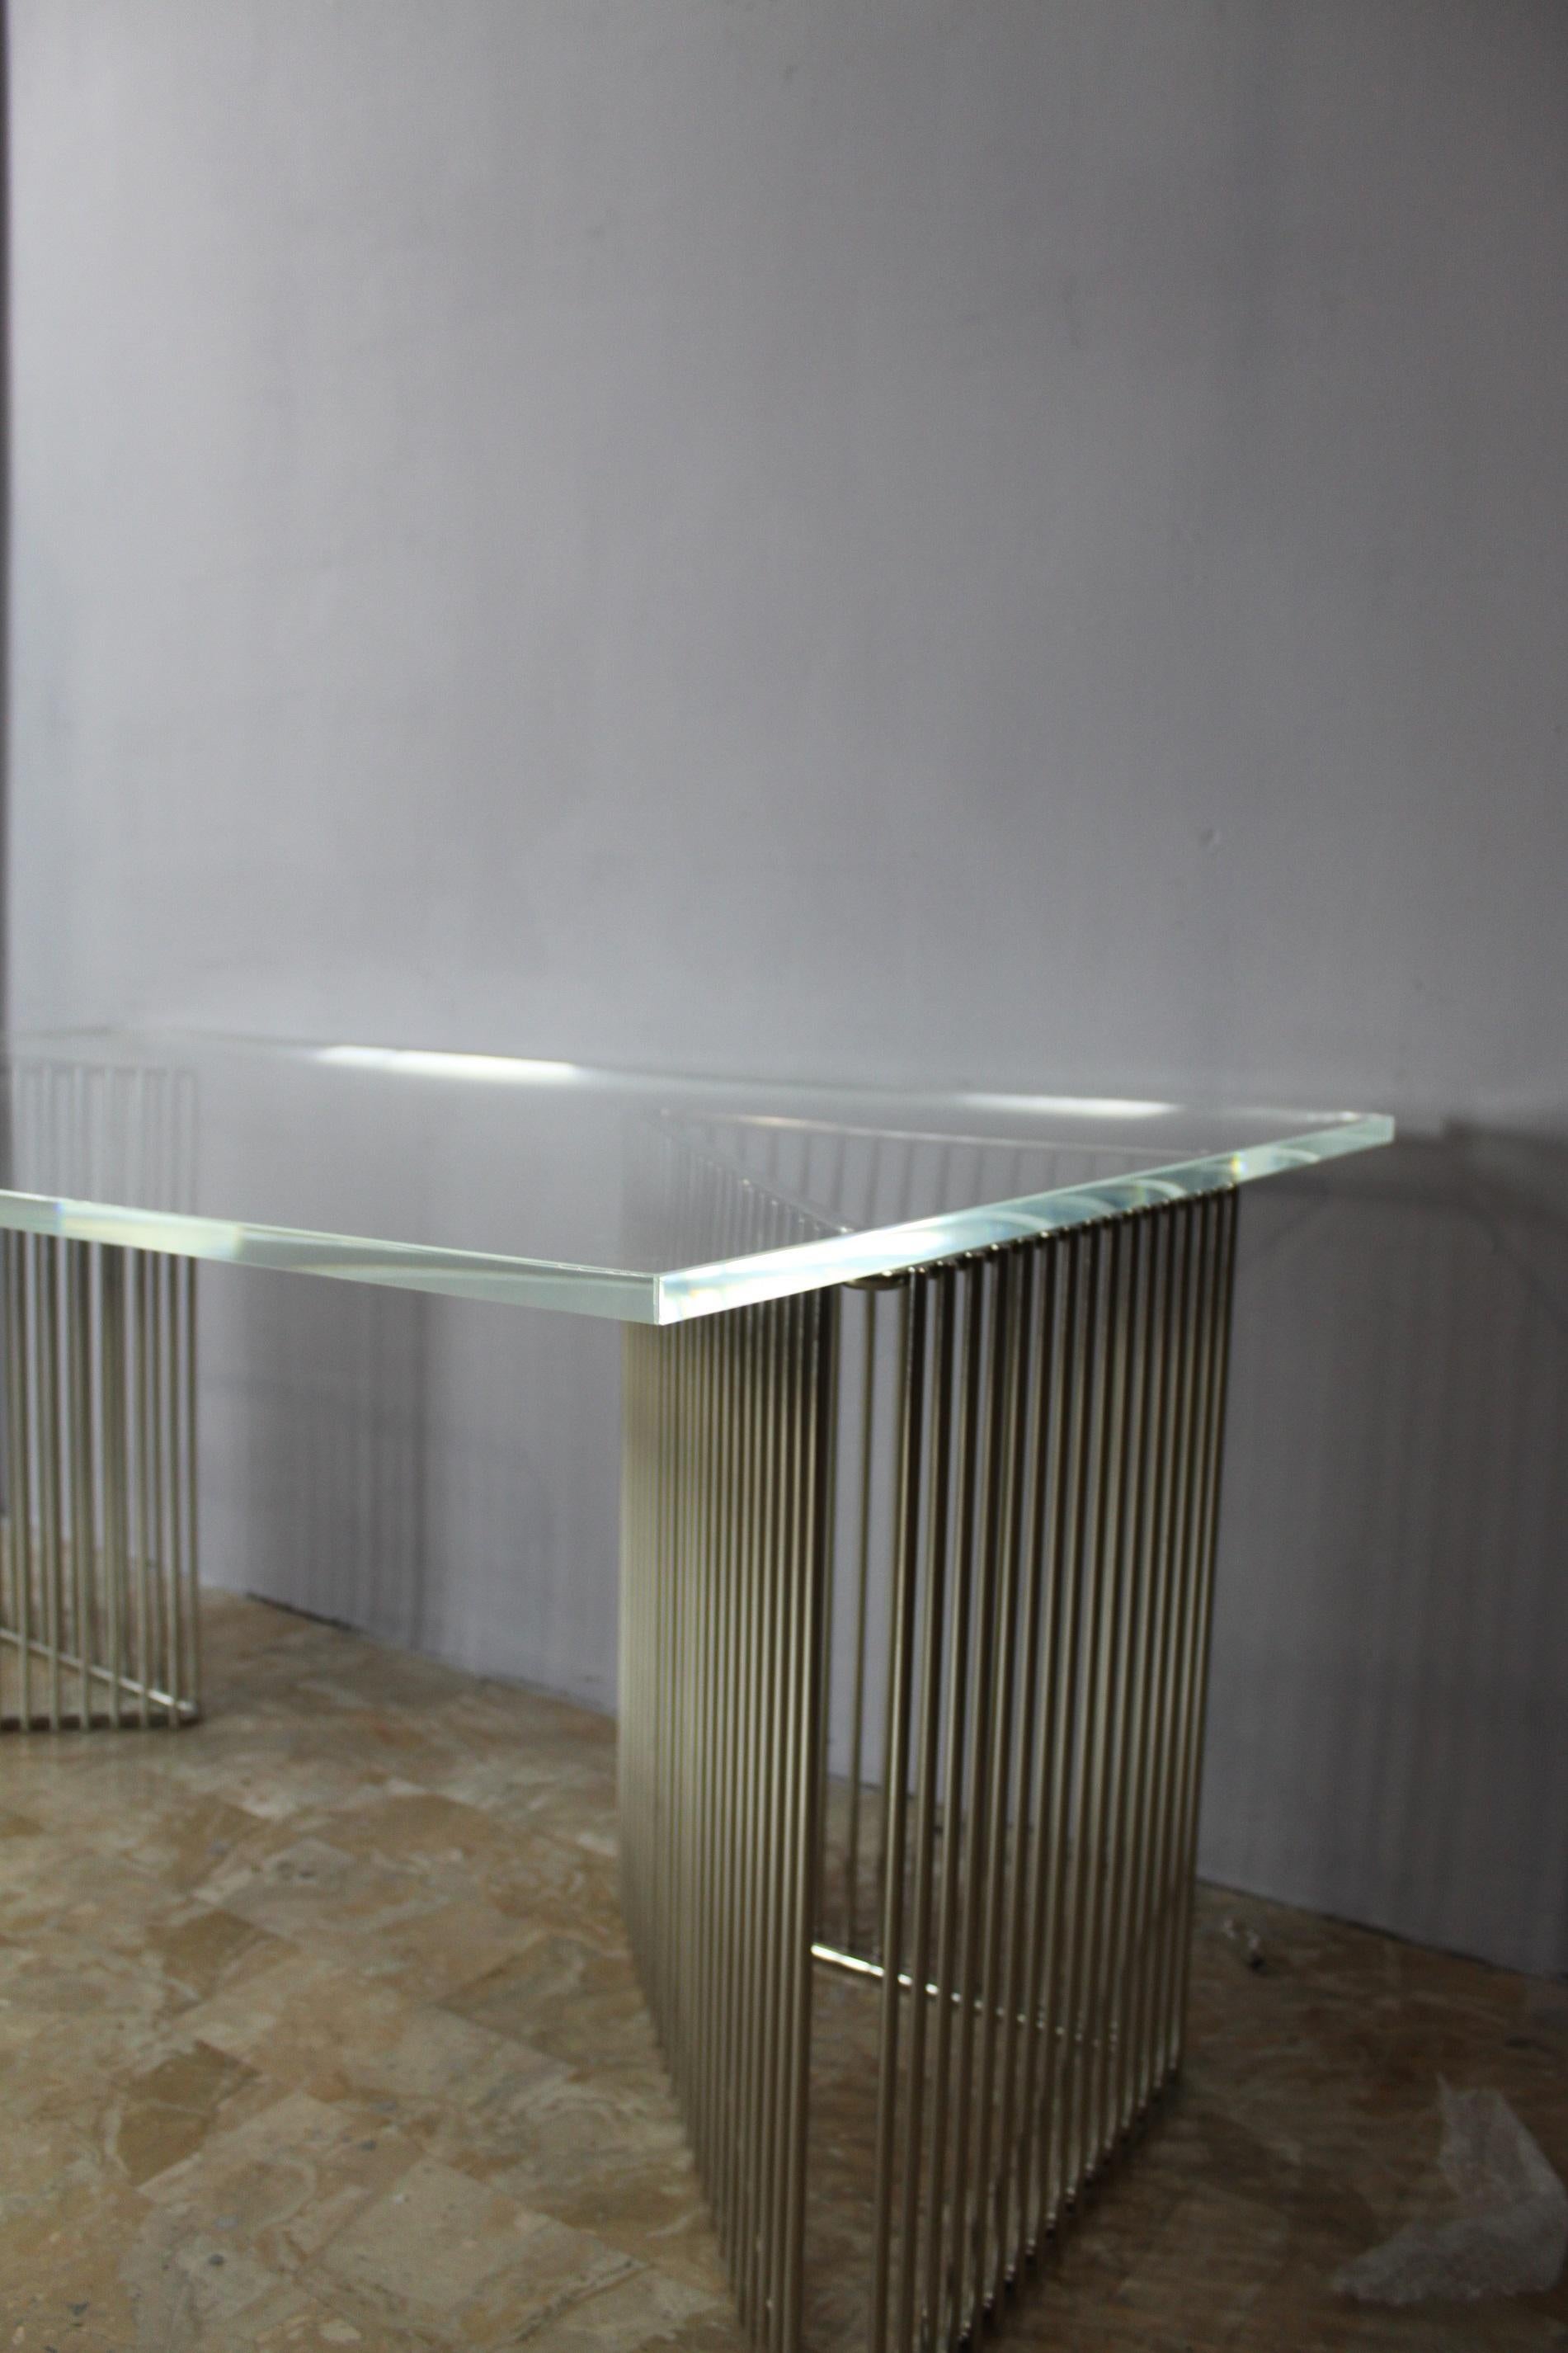 Voici le mobilier rare et luxueux de François Arnal - un chef-d'œuvre caméléon des années 1970, conçu exclusivement pour Atellier 2, marque française de décoration d'intérieur haut de gamme. Cette pièce remarquable est plus qu'un simple meuble,